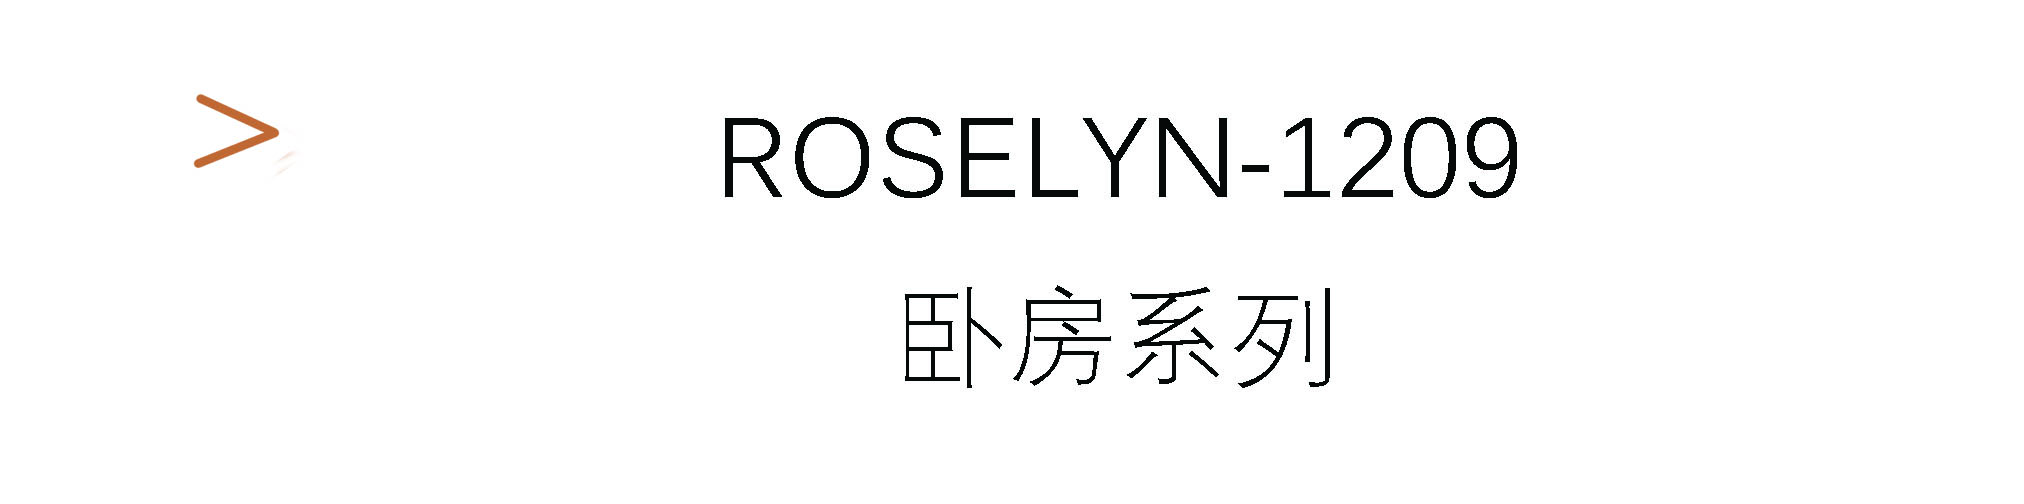 Roselyn-1209